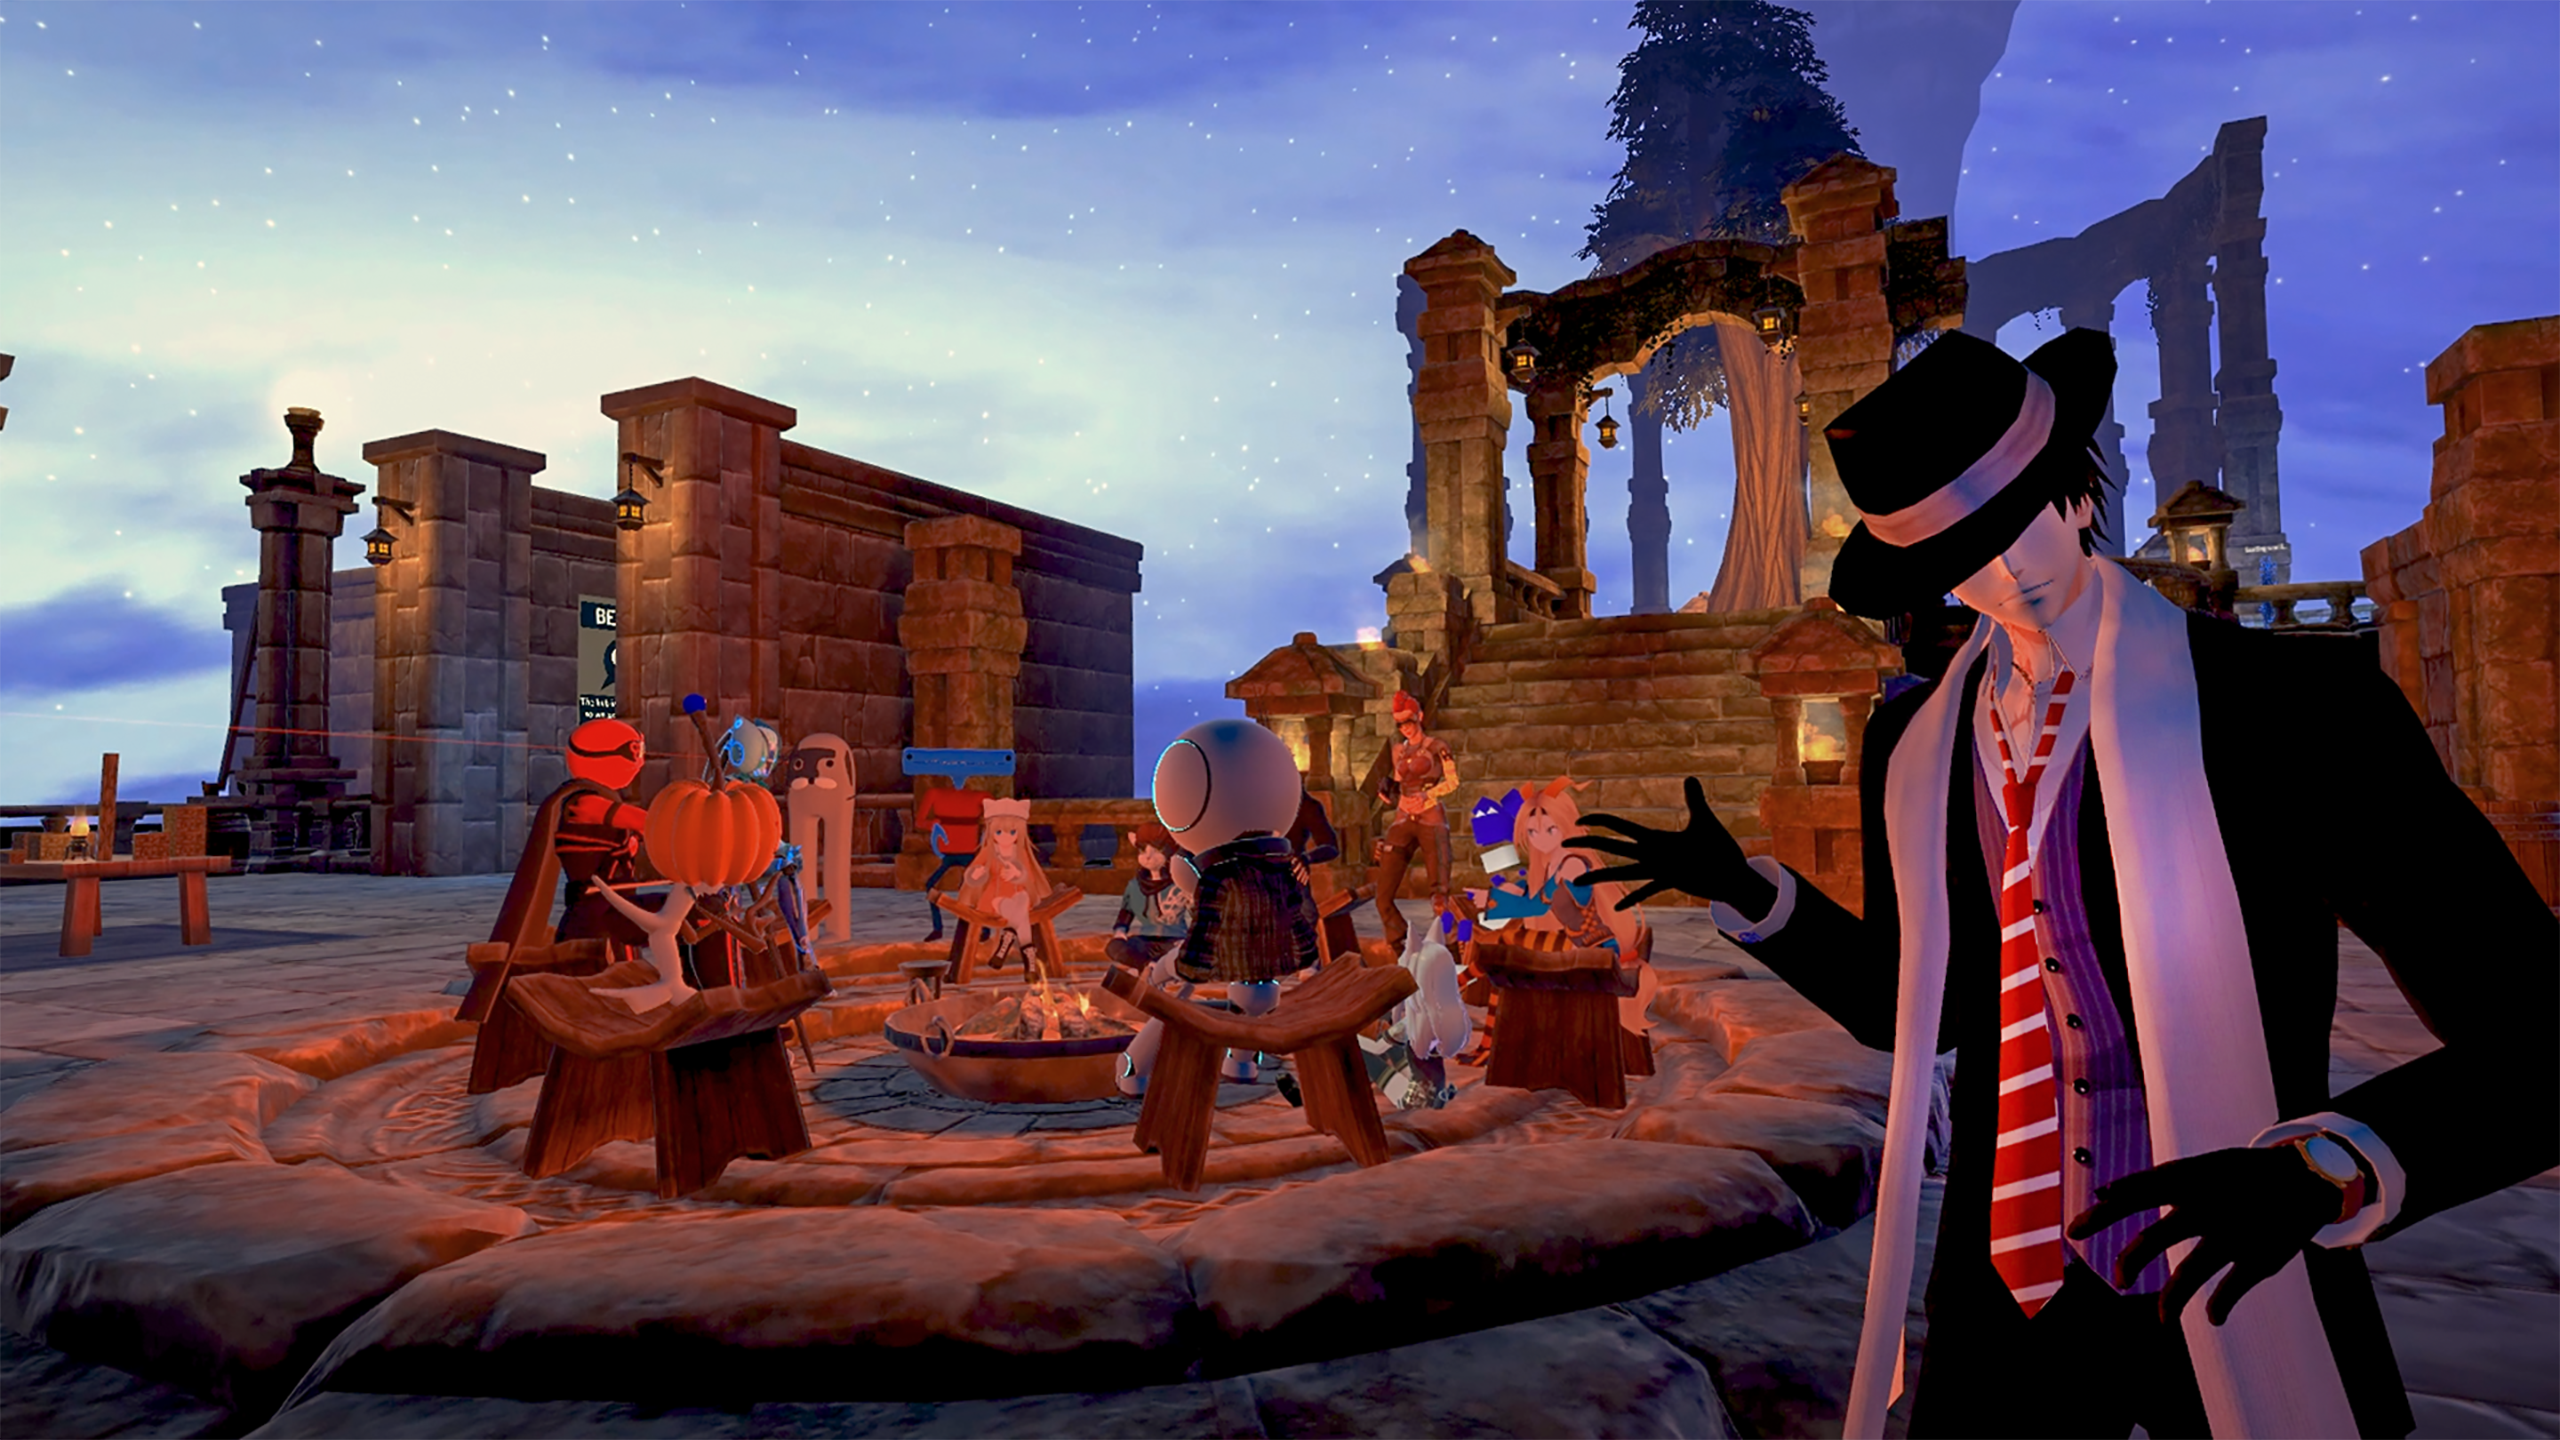 图片展示了几个卡通风格的角色在夜晚的古代遗迹中聚会，有的坐在木桶上，一个戴帽子的角色站在前方。